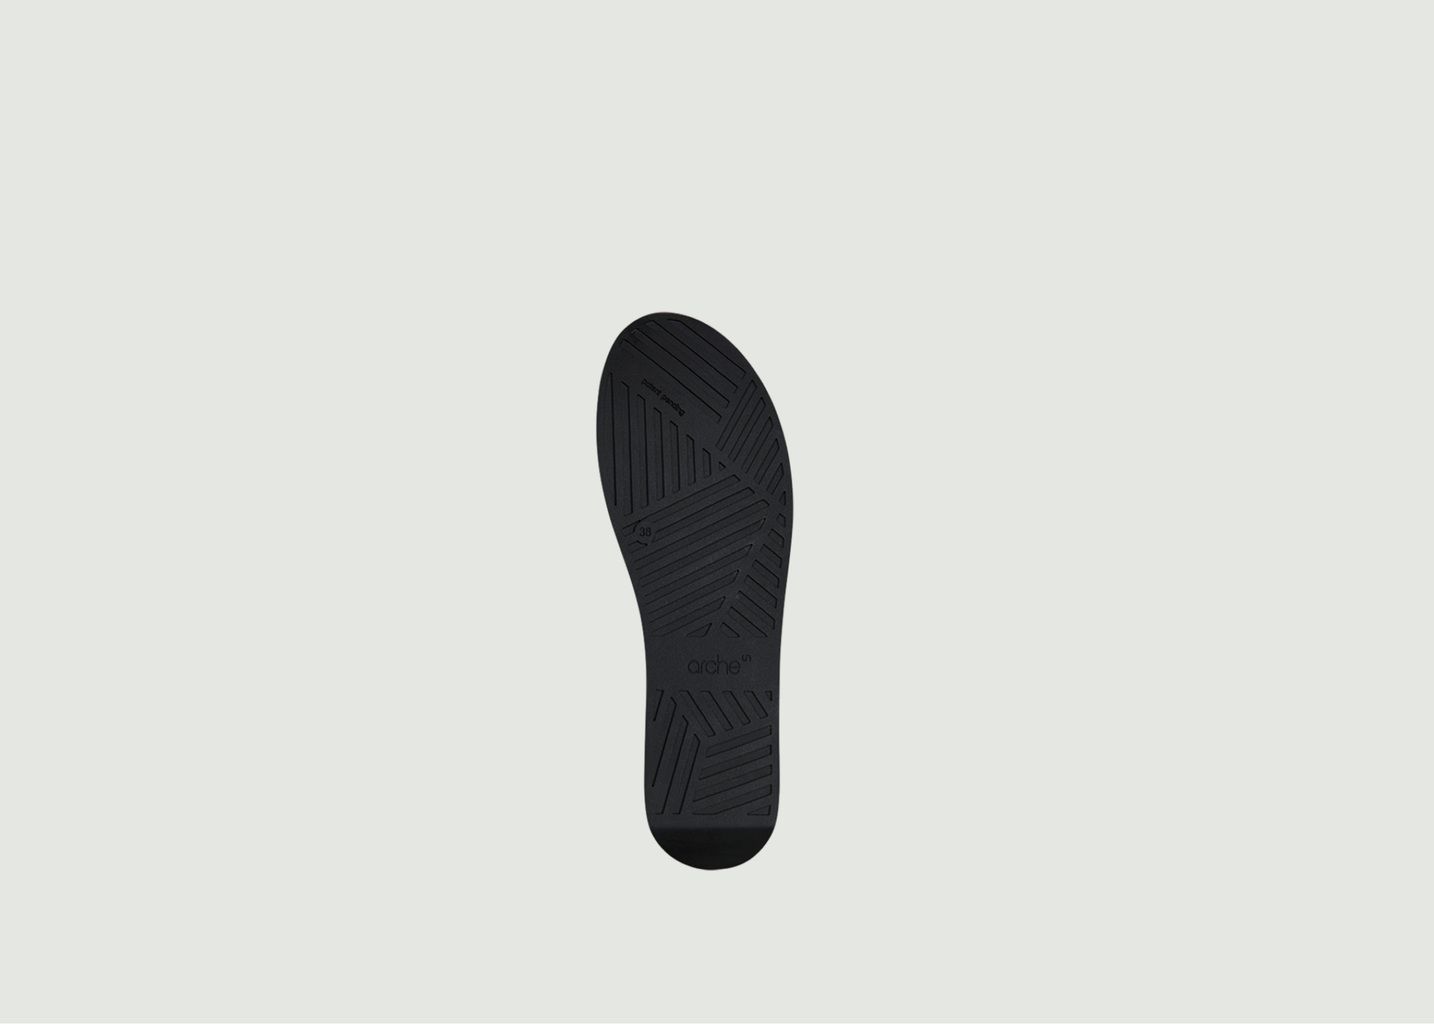 Sandales compensées en cuir Myakki - Arche